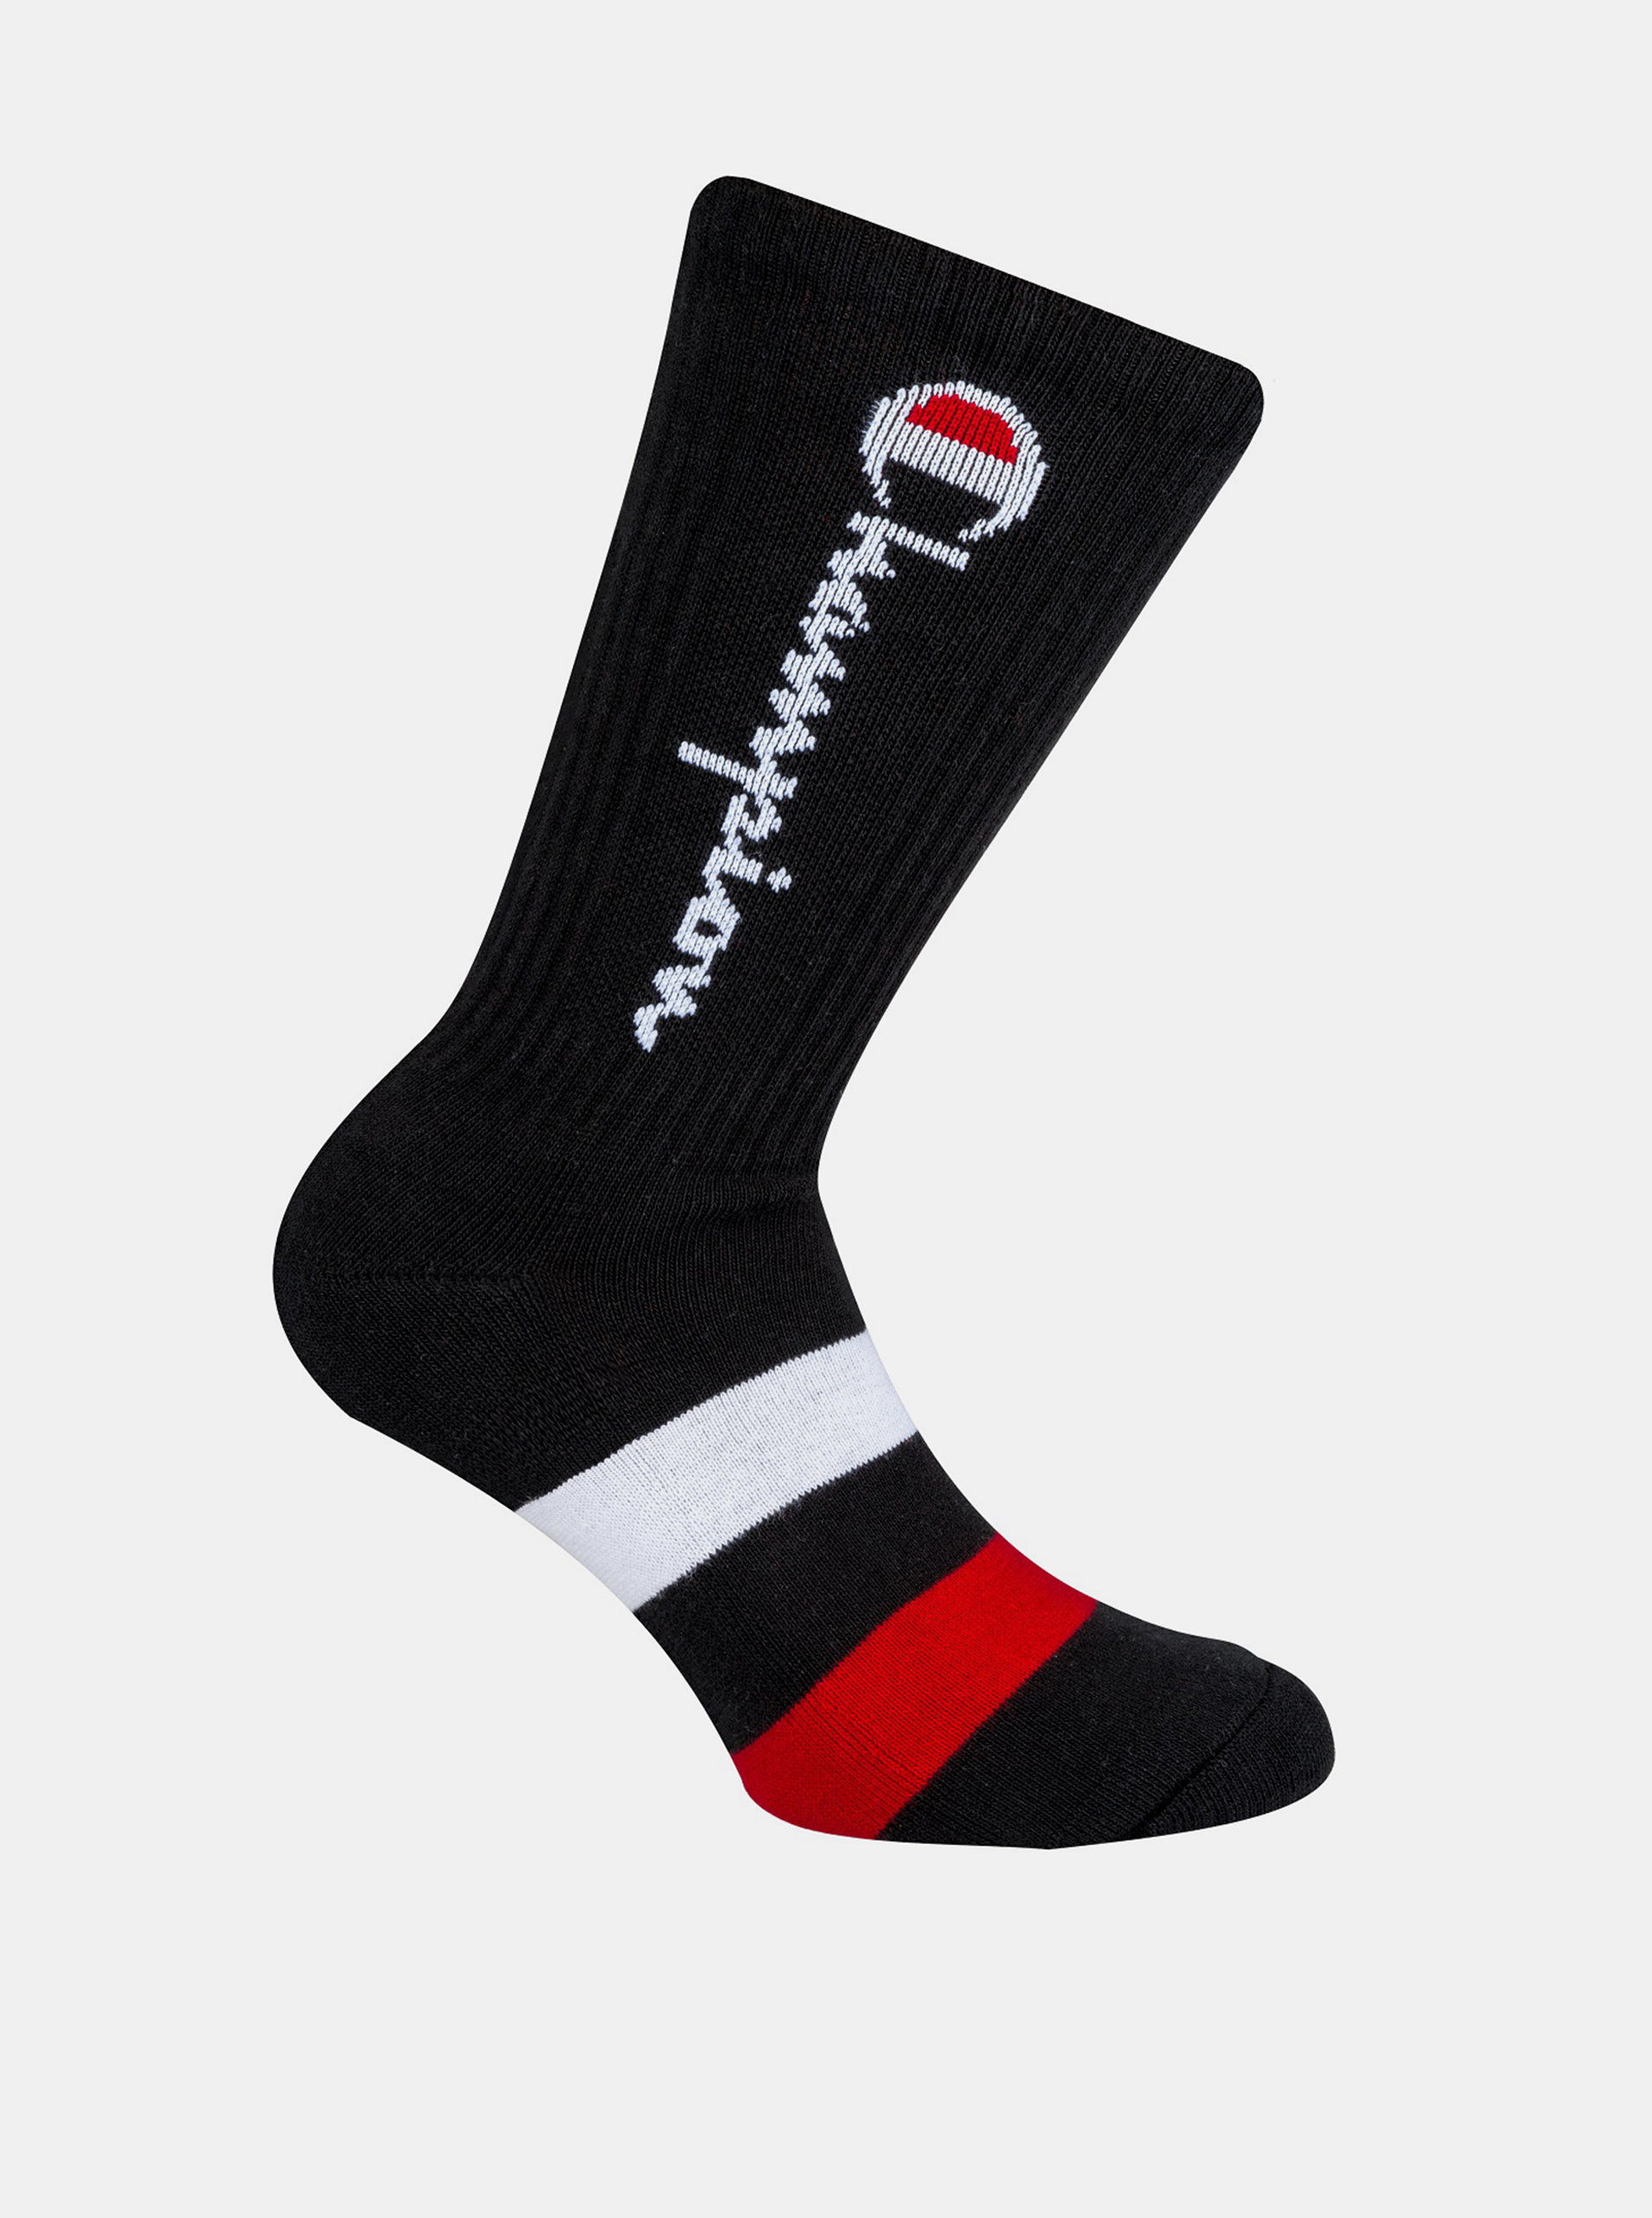 CREW SOCKS ROCHESTER AUTHENTIC - 1 pár Champion vyšších sportovních ponožek - černá - červená - modrá